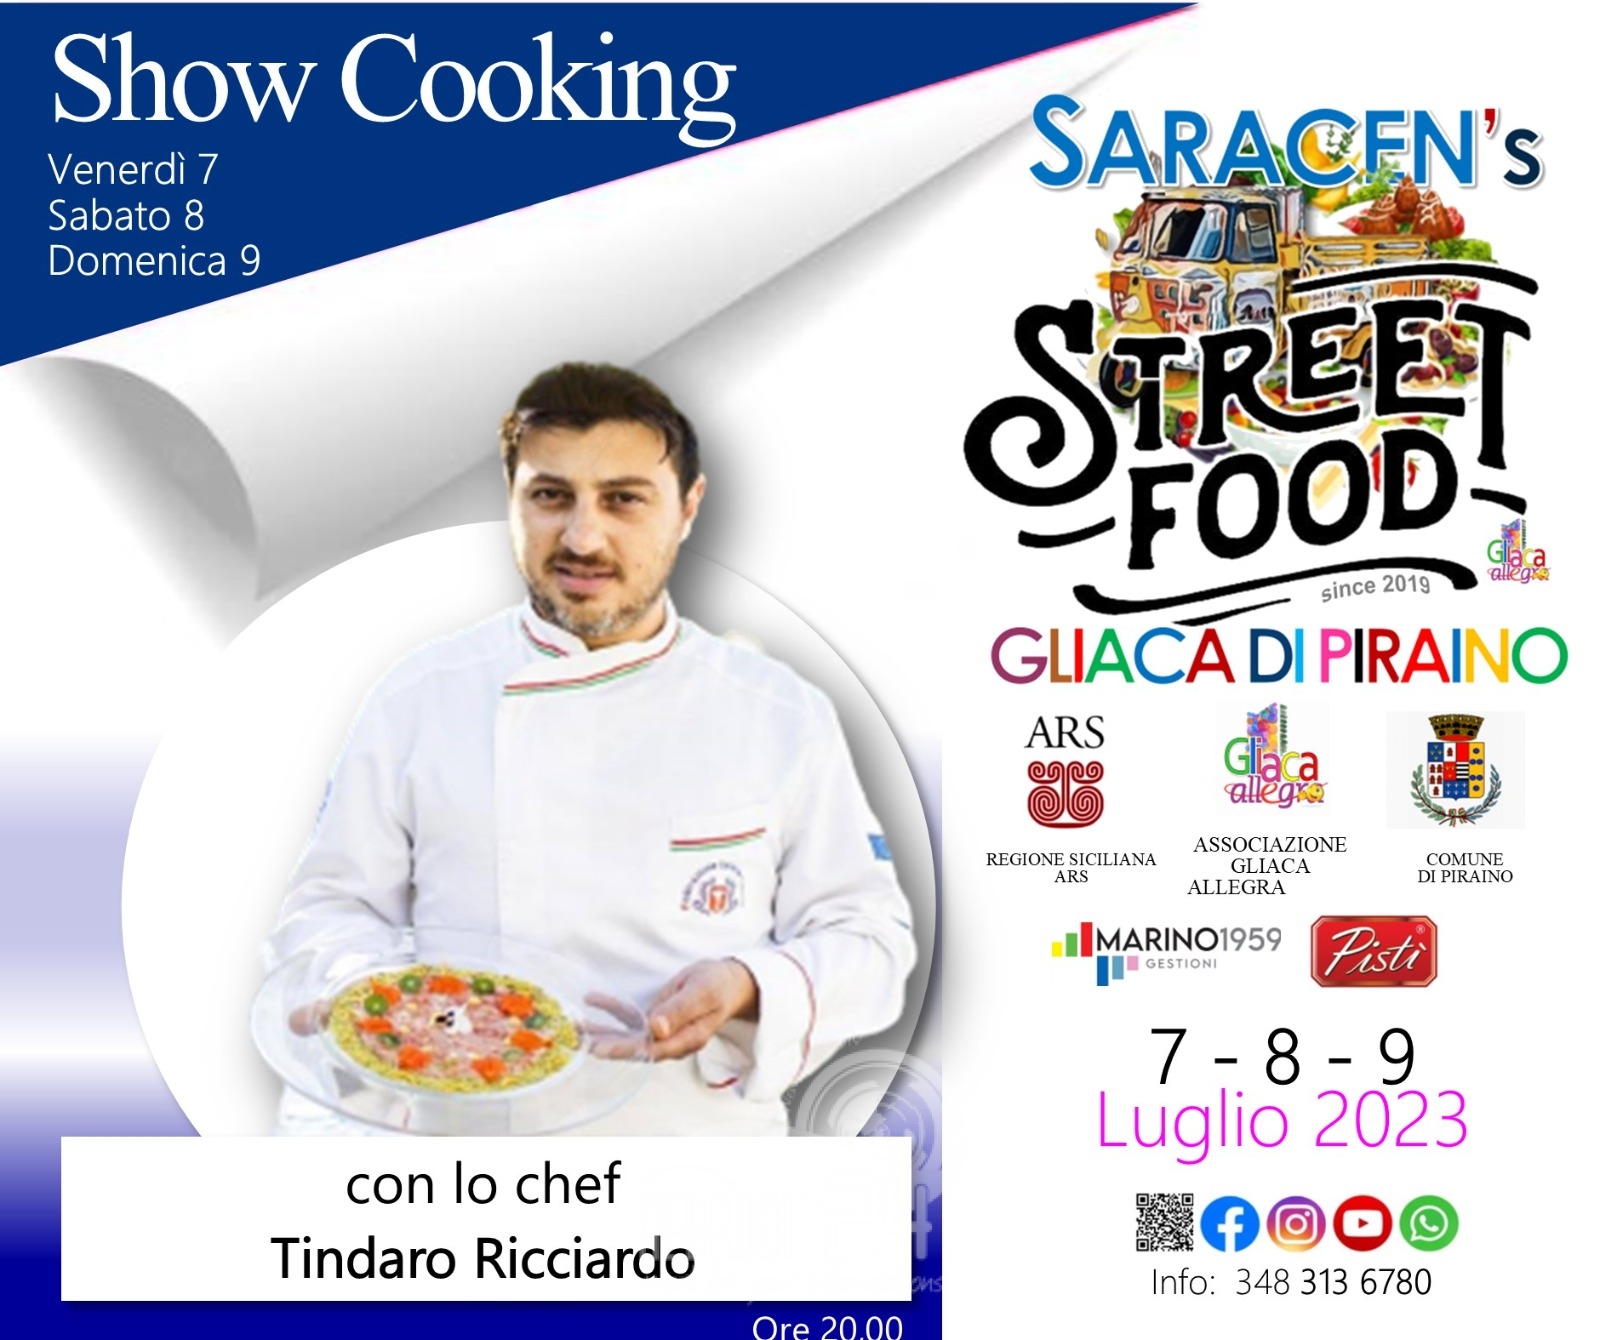 Gliaca di Piraino – EVENTI – La “Locandina” degli eventi che animeranno il Saracen’s Street Food